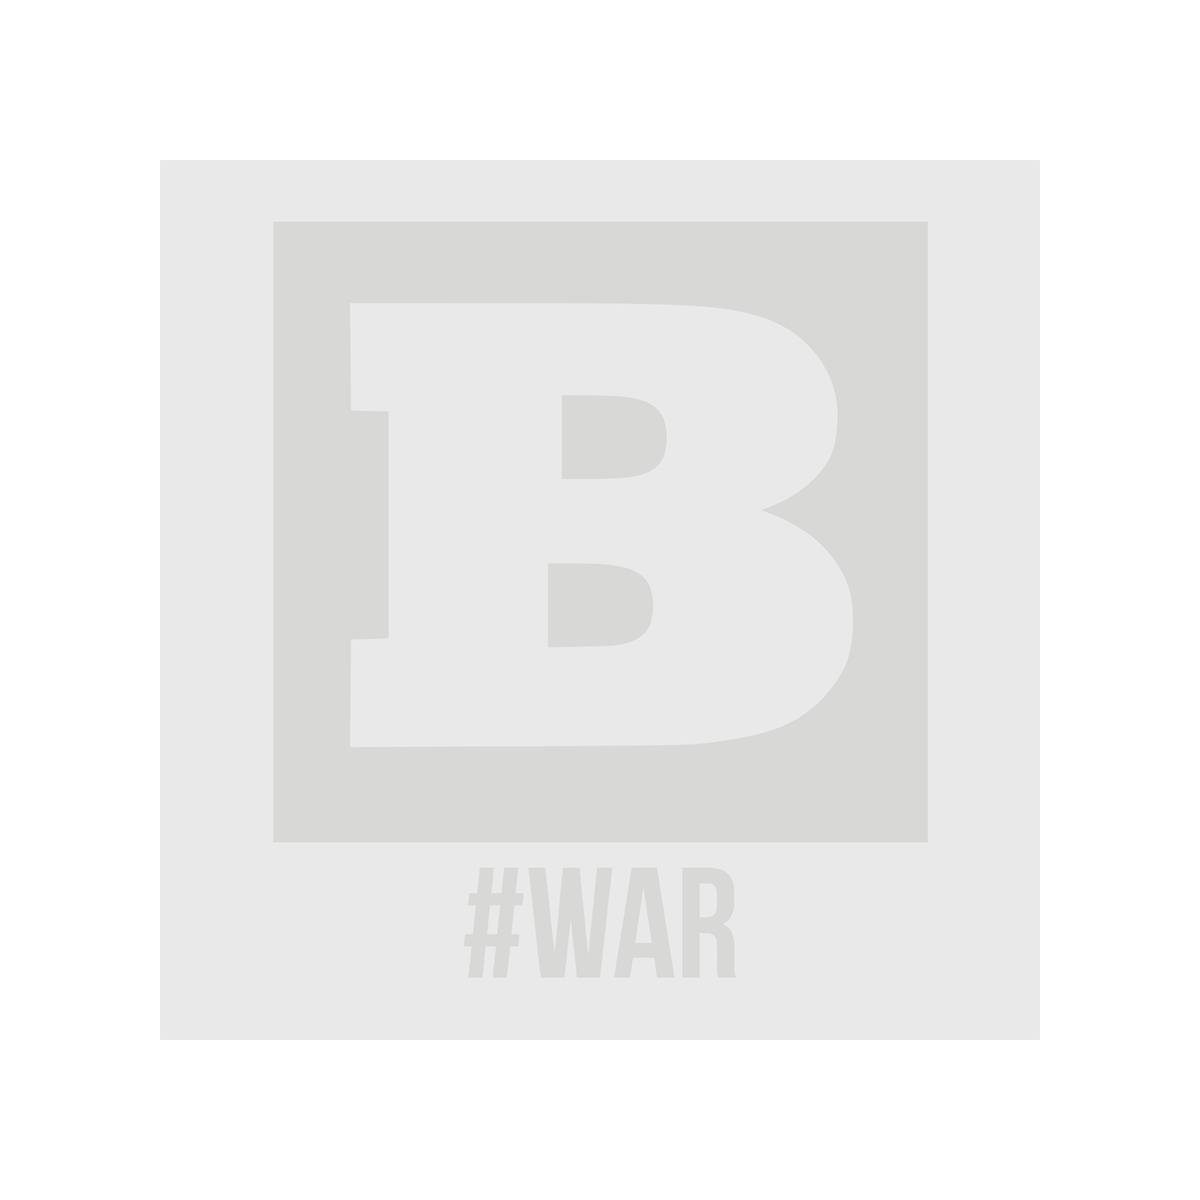 Breitbart #WAR Women's T-Shirt - White